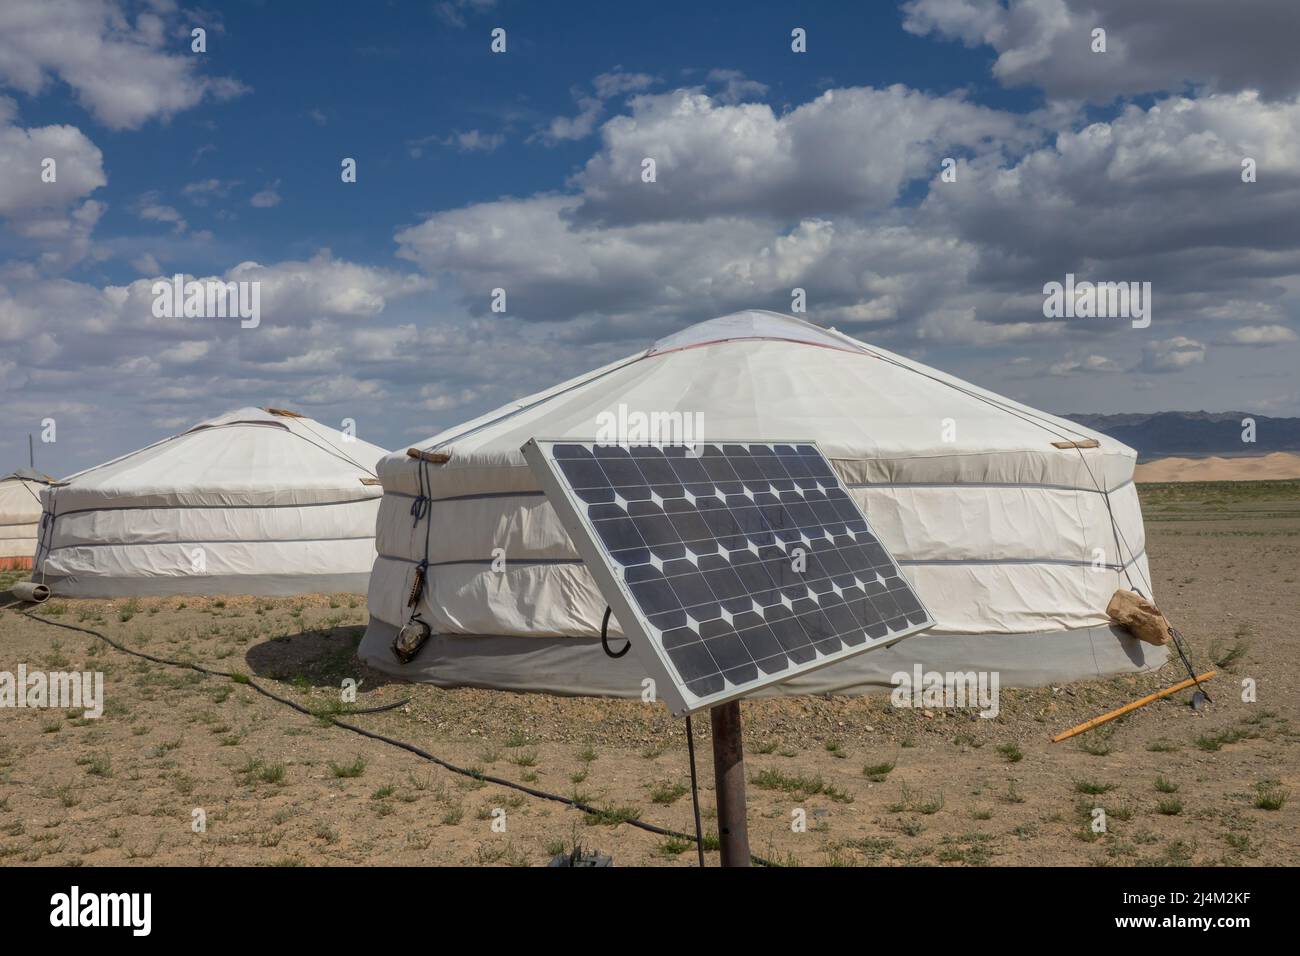 Mongolian yurt and solar panel Stock Photo